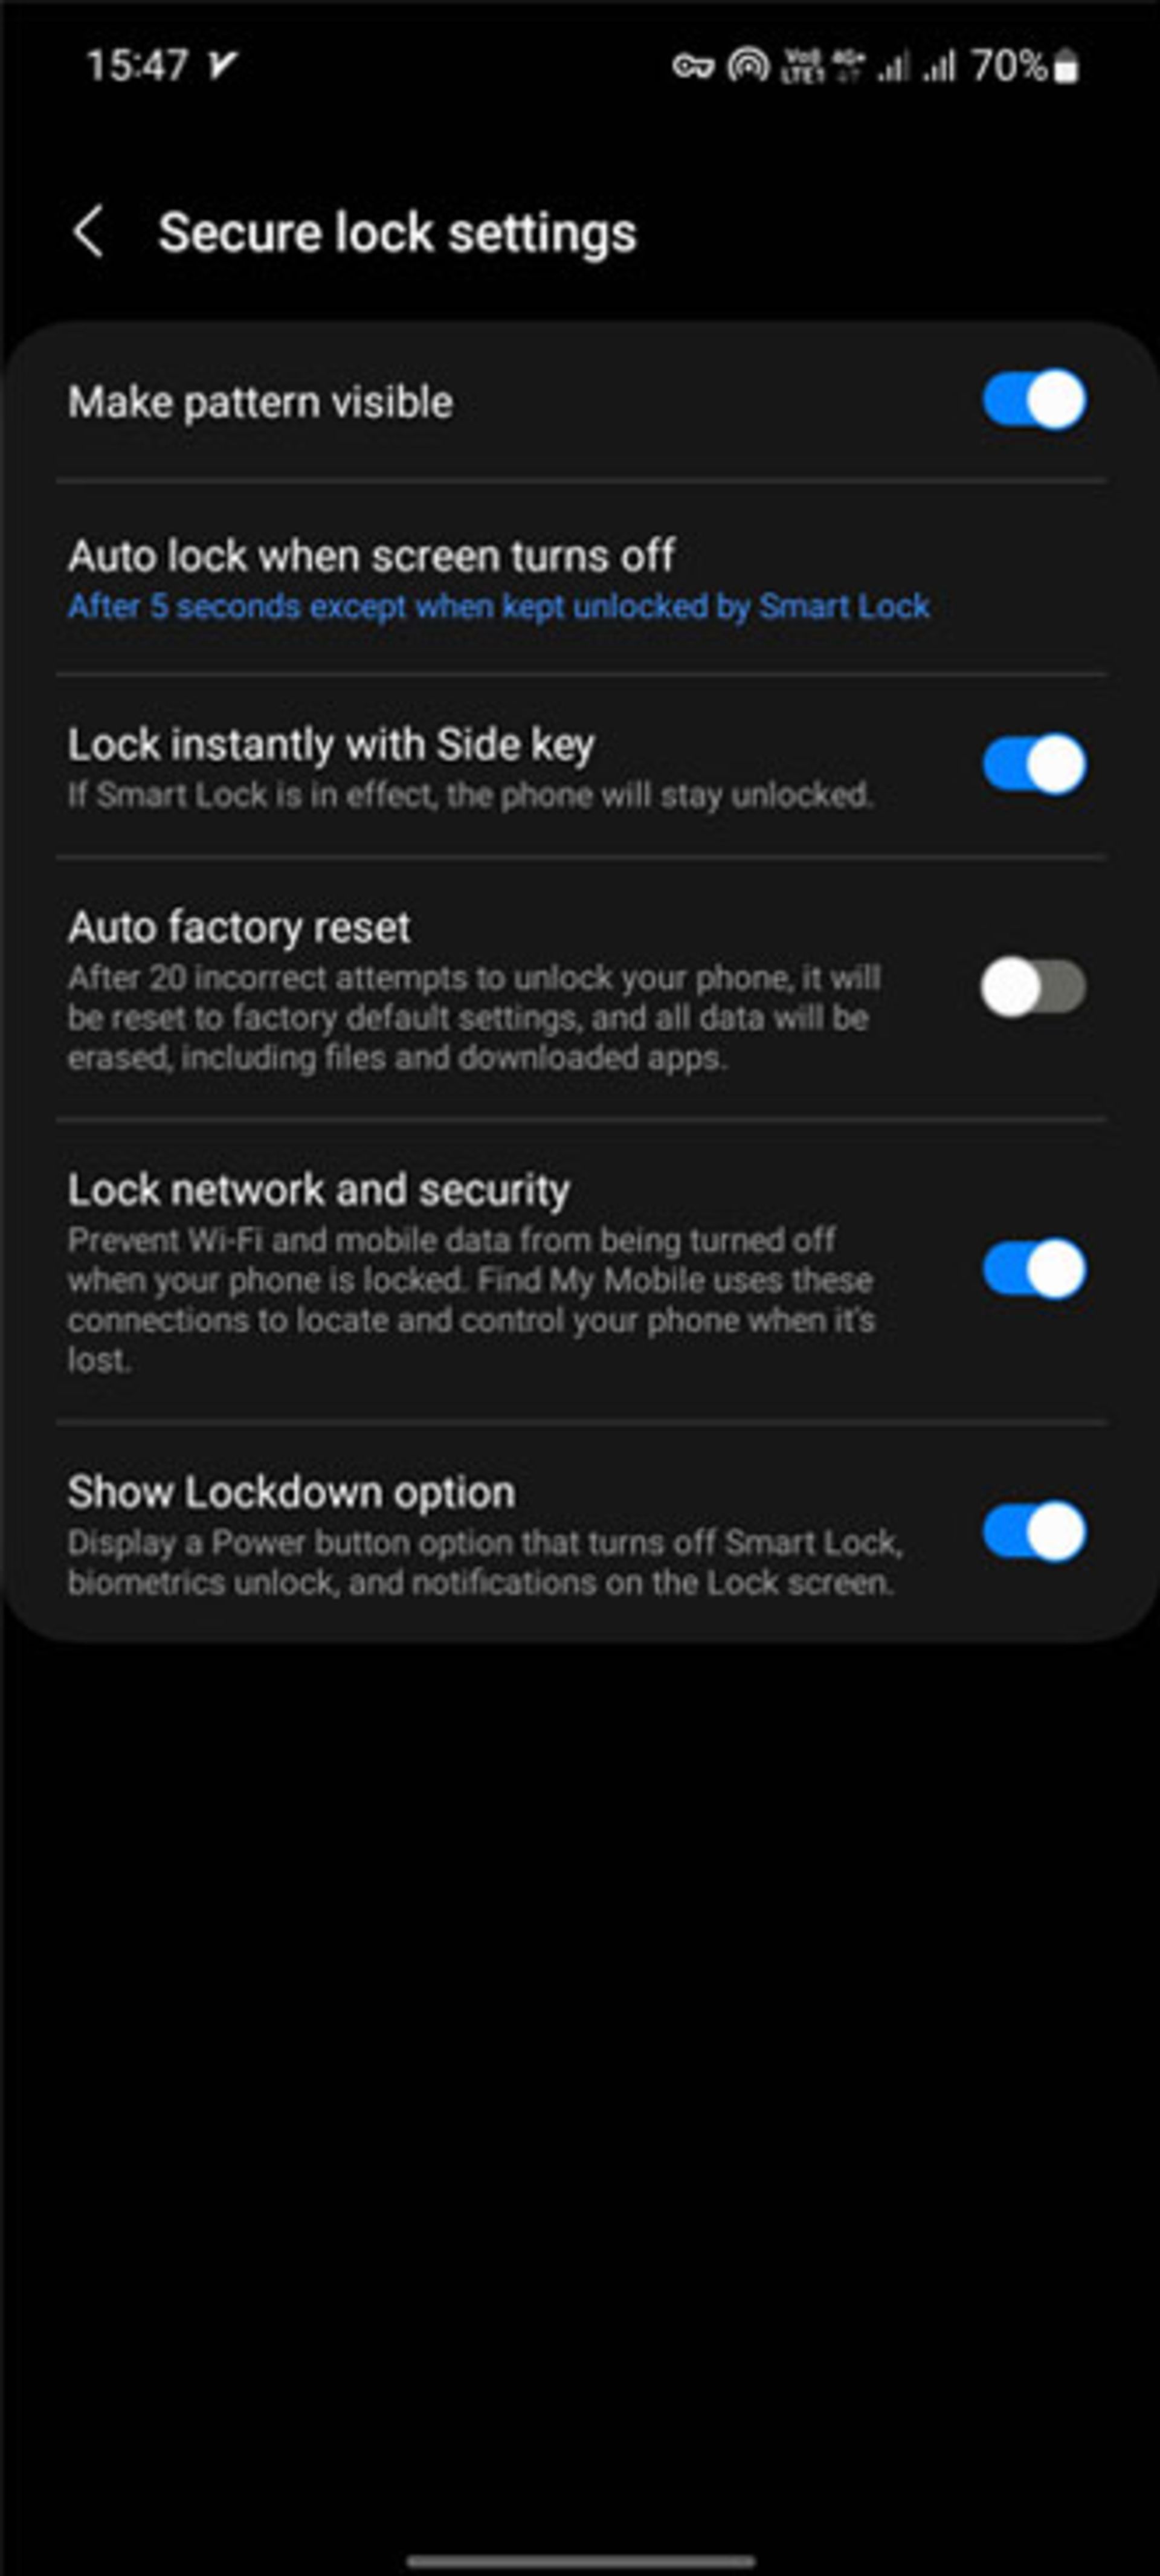 Secure lock screen settings